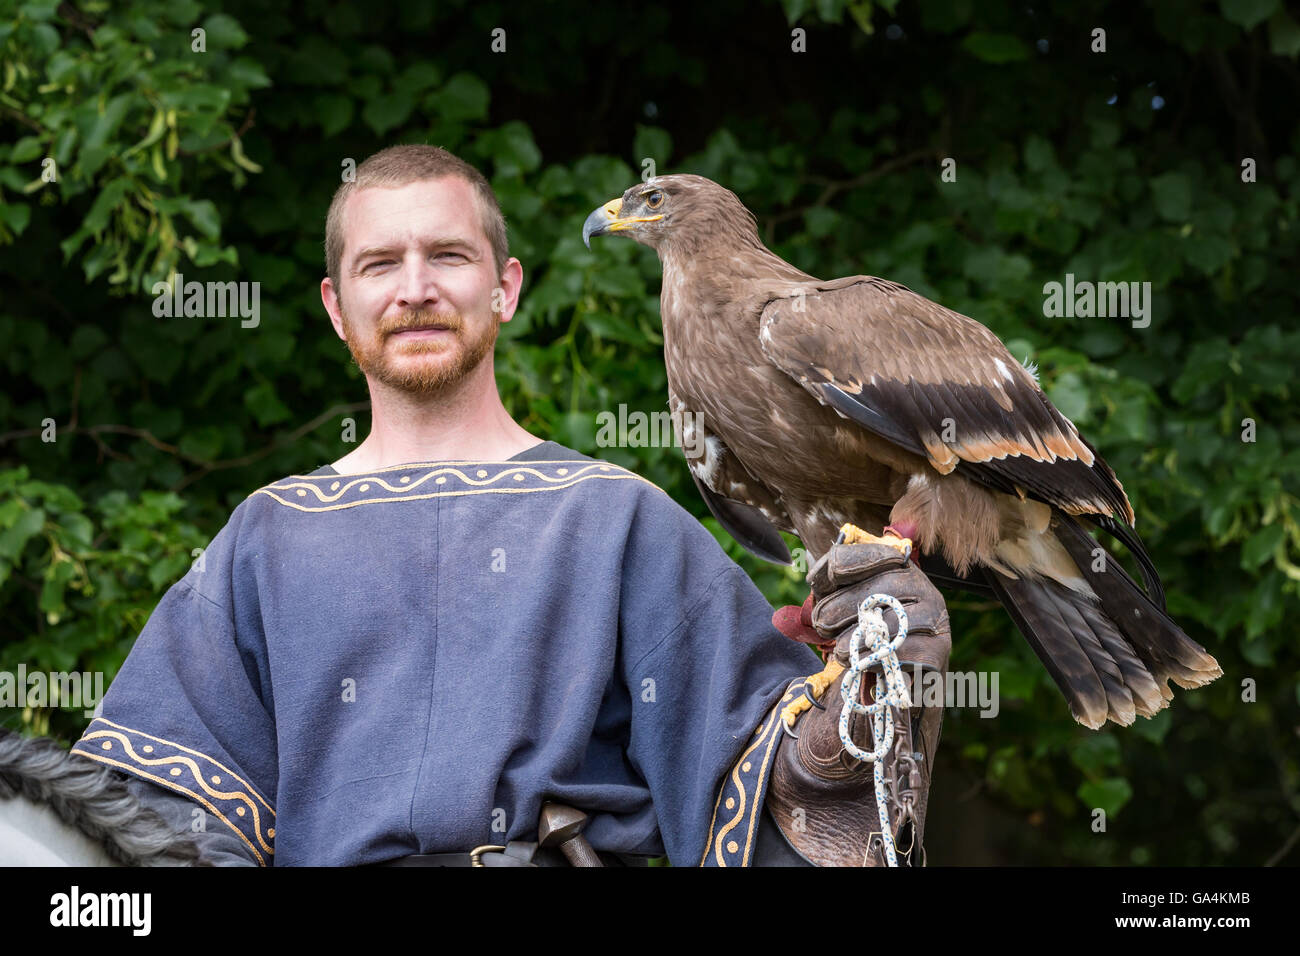 Mann gekleidet in mittelalterlichen Kleidern und mit einem Falken auf dem Arm, Esrum, Dänemark Stockfoto